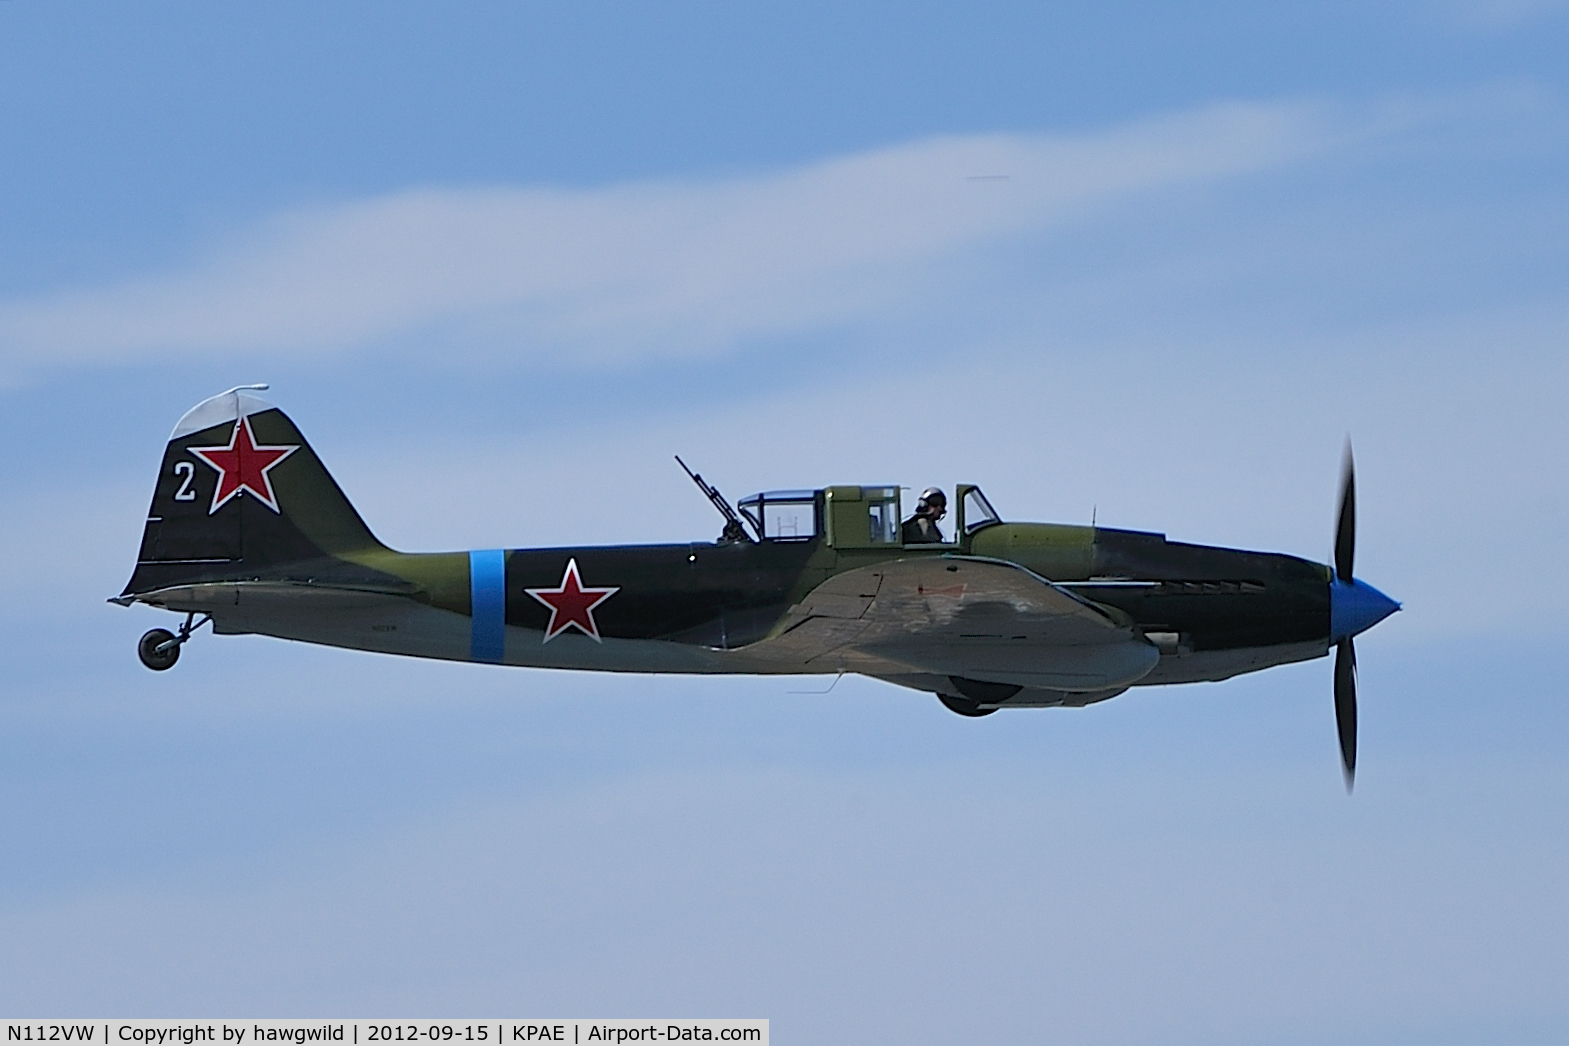 N112VW, Ilyushin Il-2M3 Shturmovik C/N 305401, Flying Heritage Collection's ILYUSHIN IL-2M3 Shturmovik (Ser#305401)